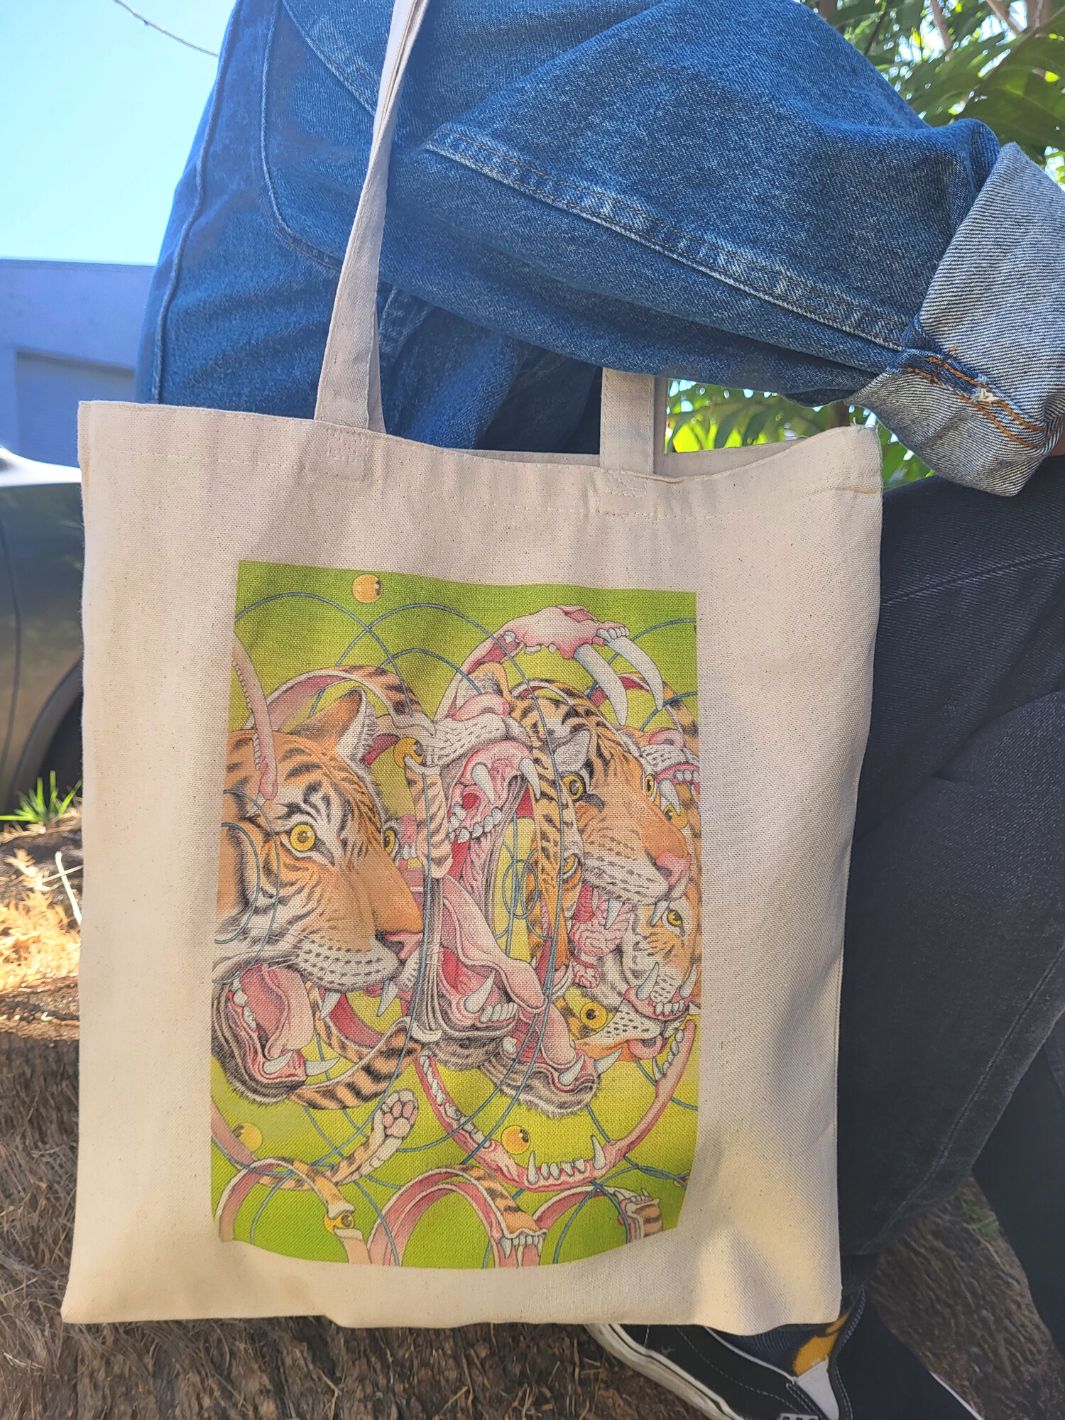 Popkiller Artist Series Shintaro Kago Tiger Factorization Tote Bag